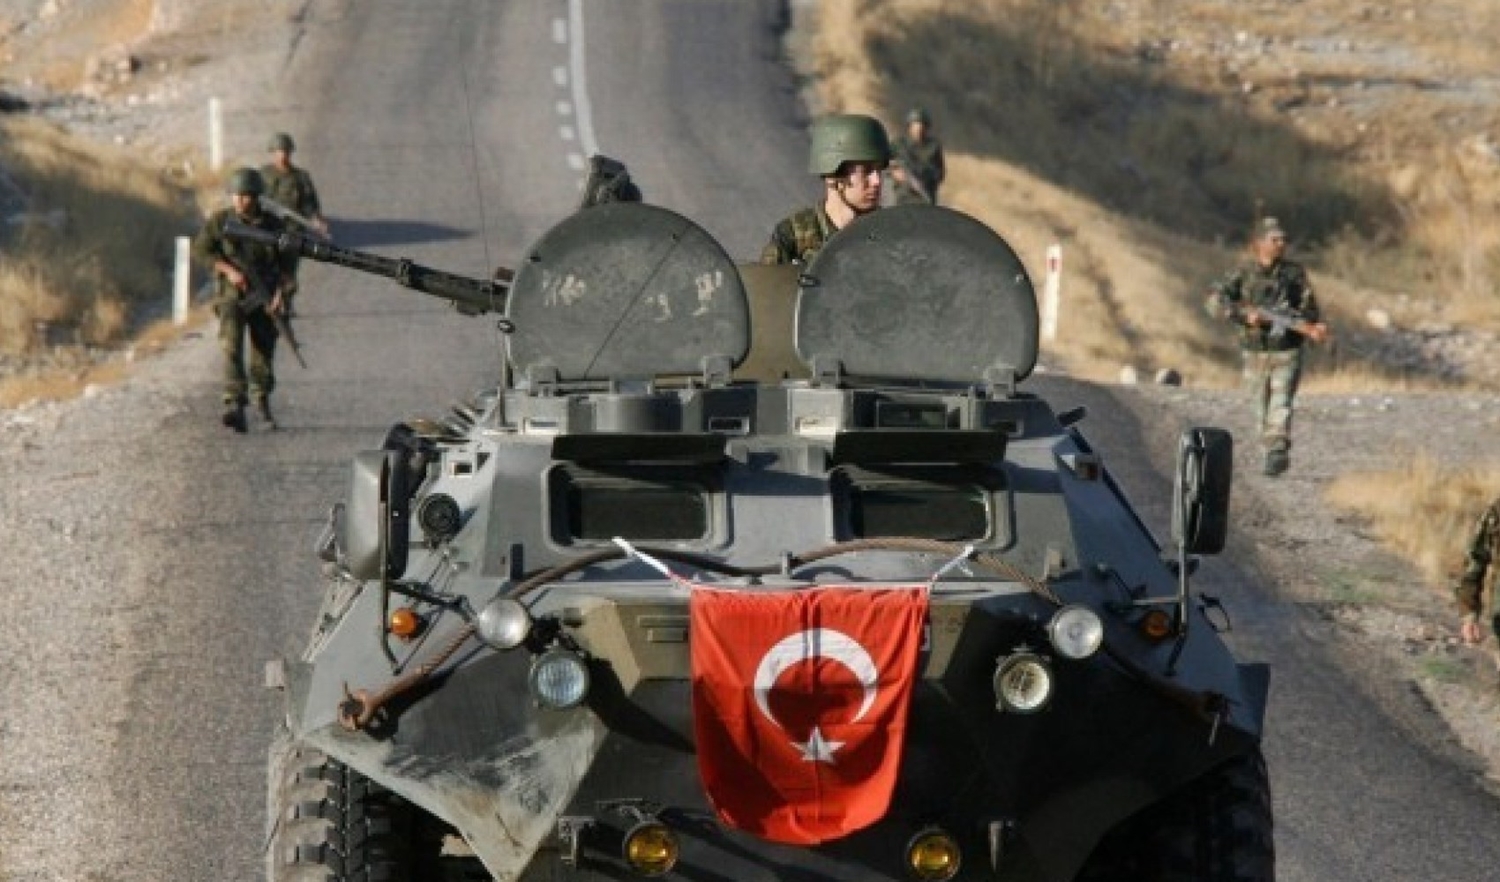 وزارة: مقتل جندي تركي وإصابة اثنين في إدلب بسوريا